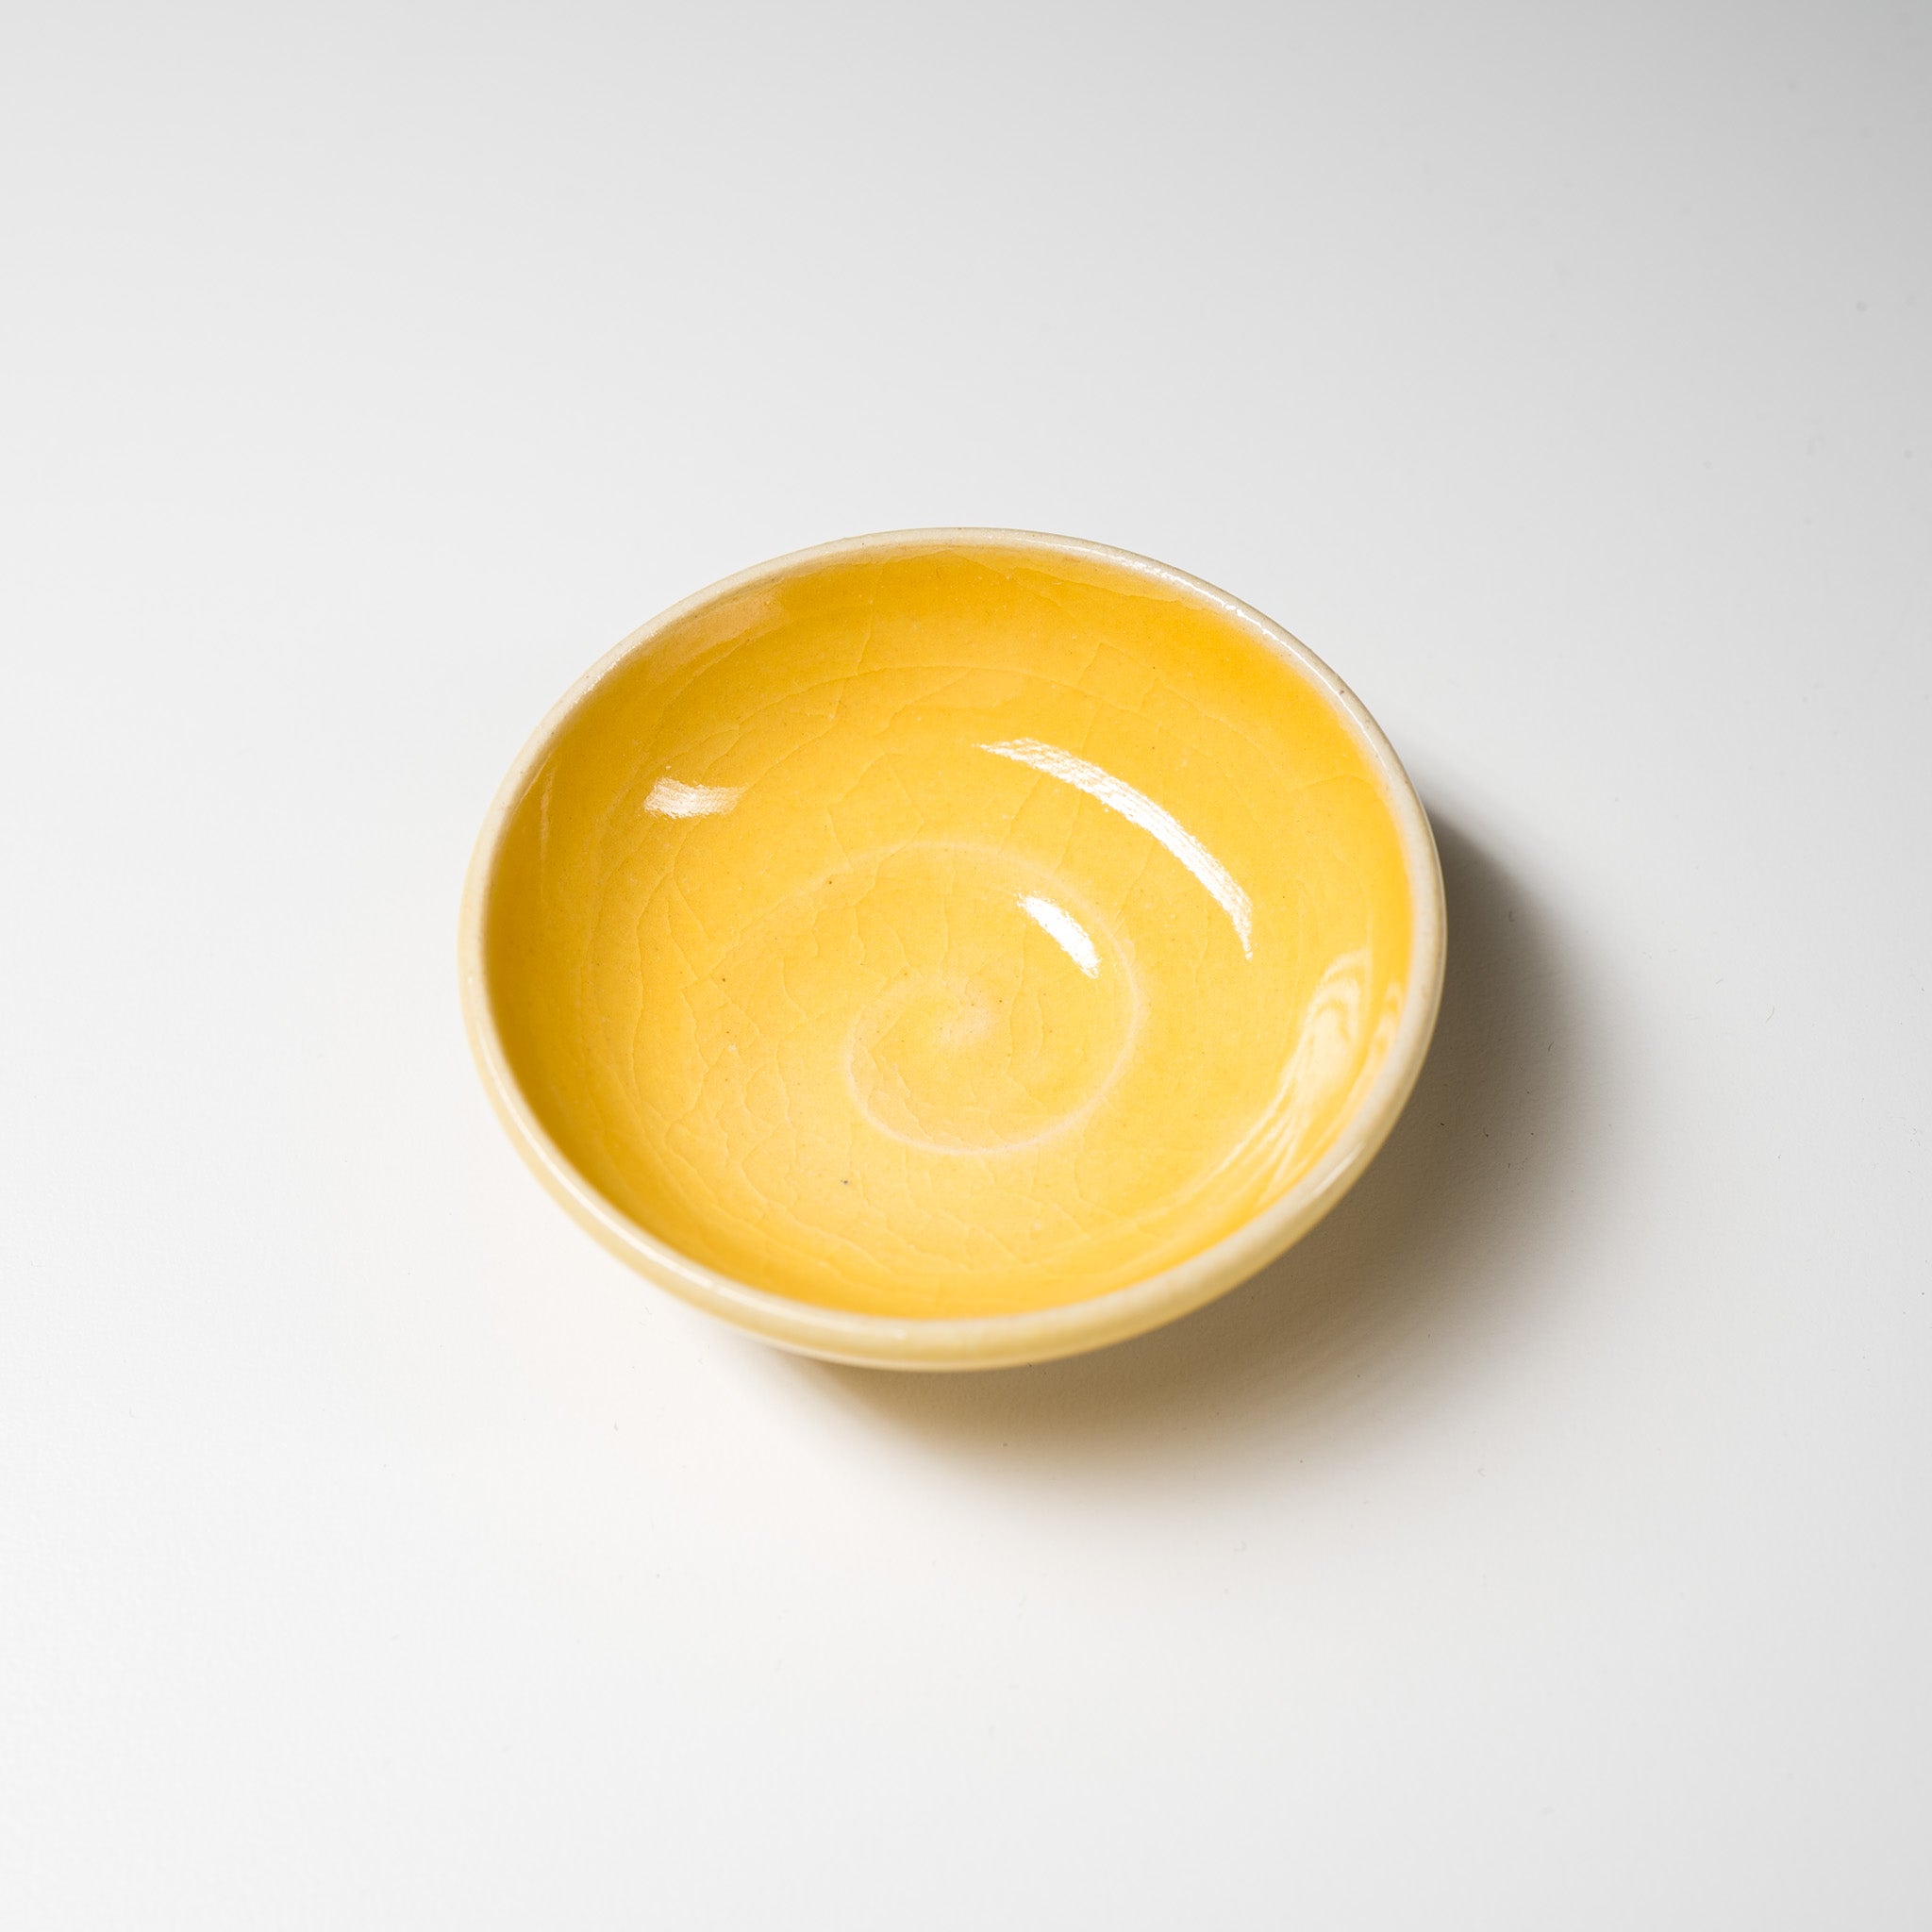 NINSHU Single Small Dish - Yuzu Yellow / 仁秀 豆皿 ゆず